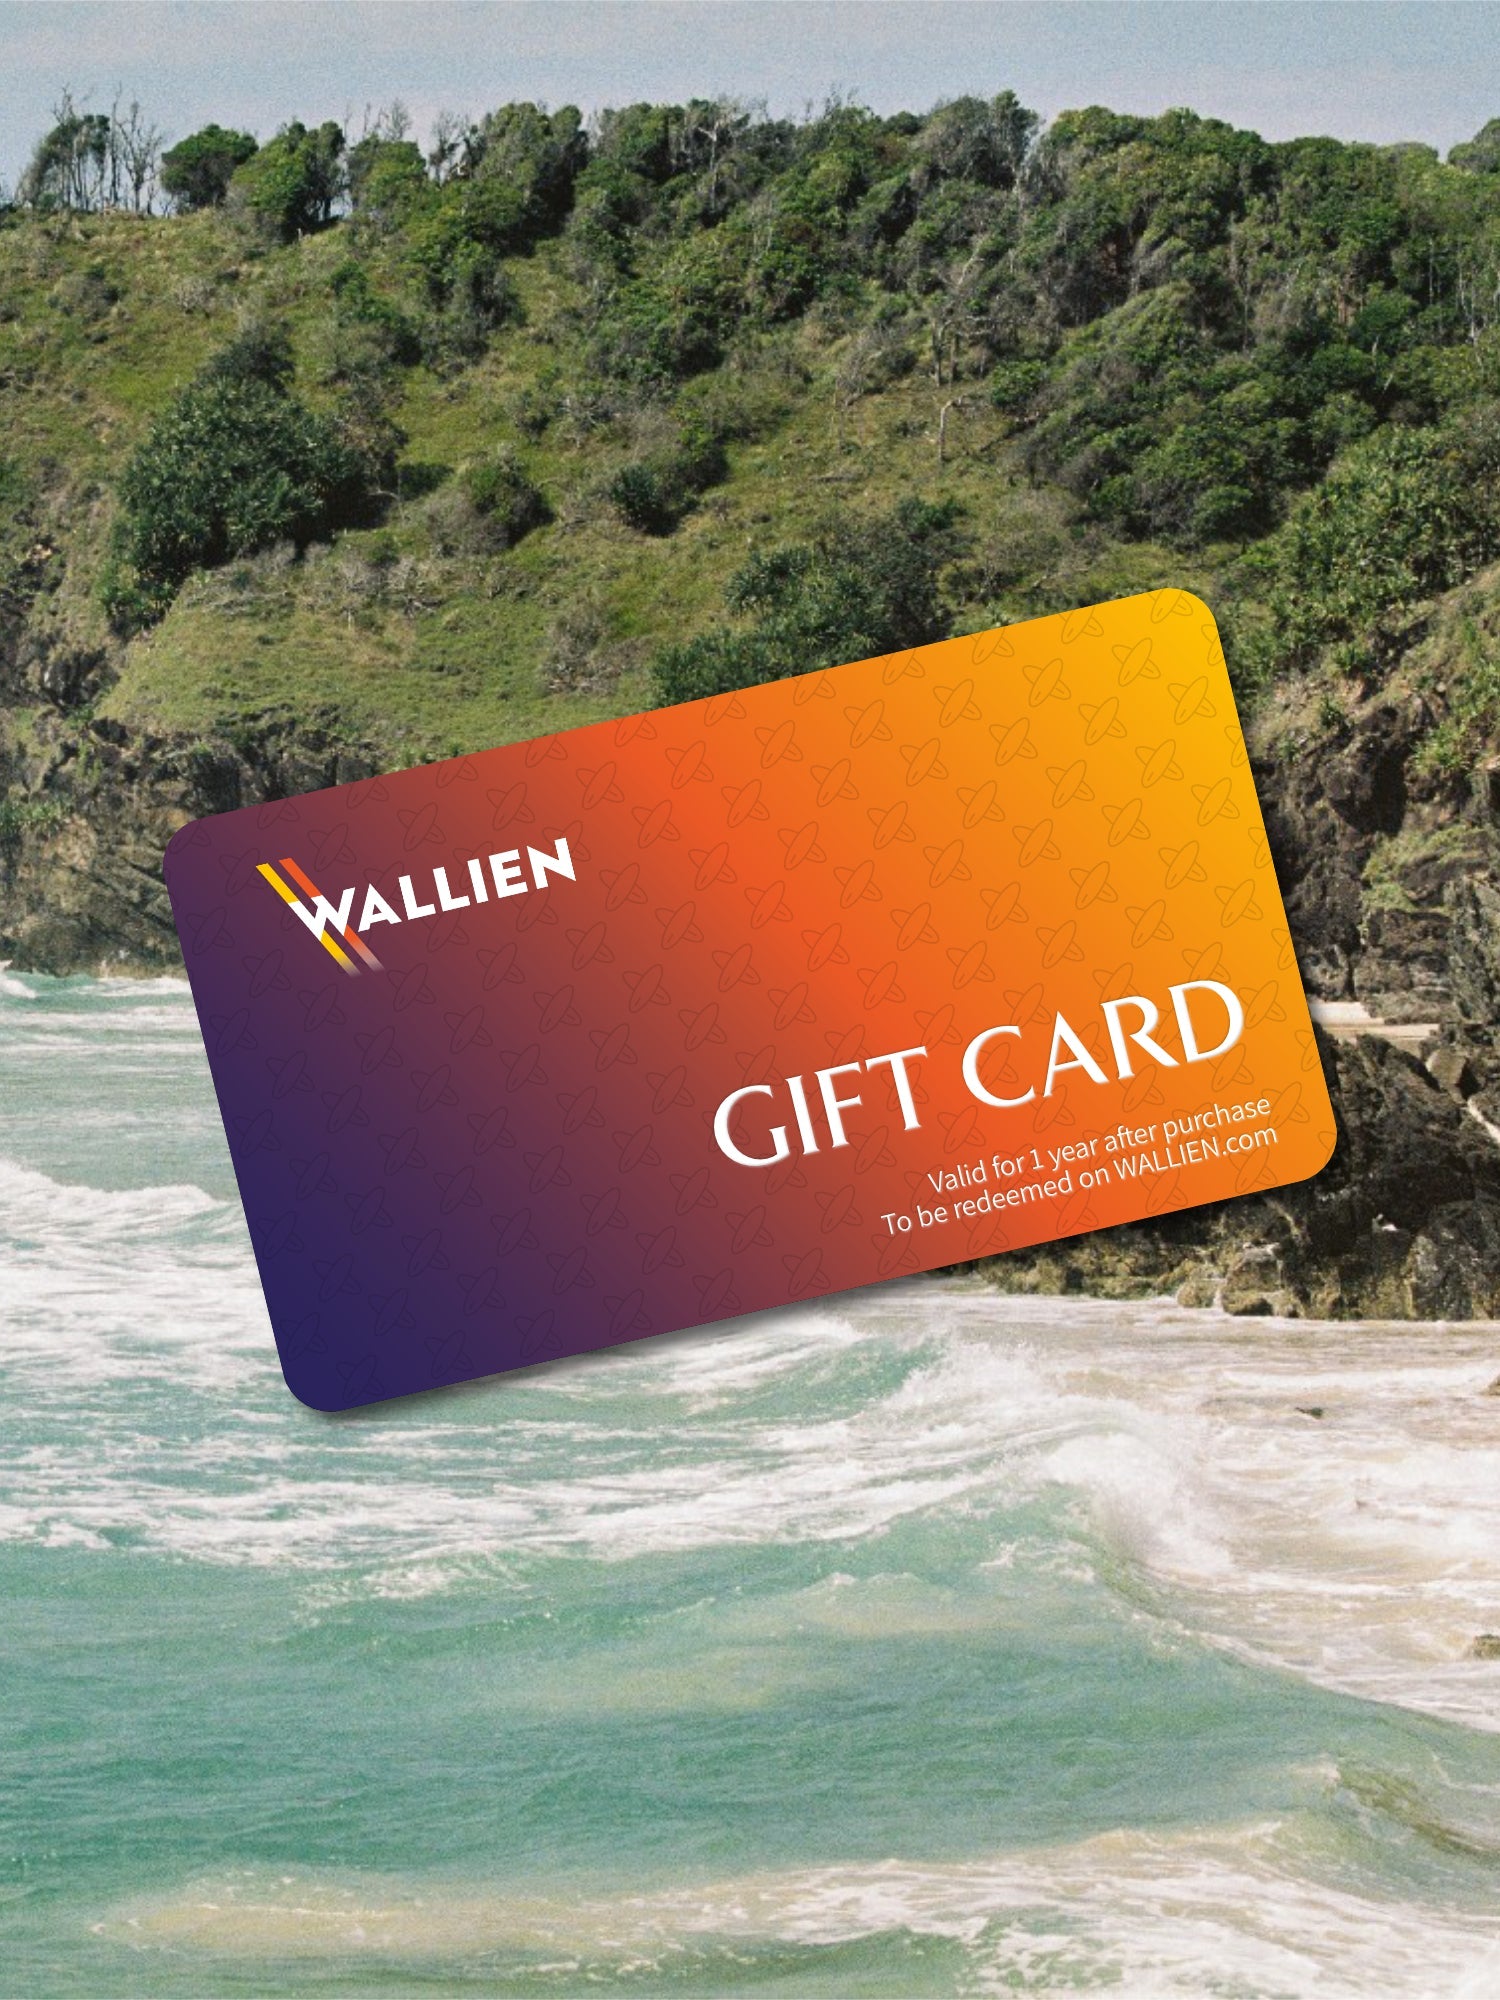 WALLIEN - Gift Card - WALLIEN